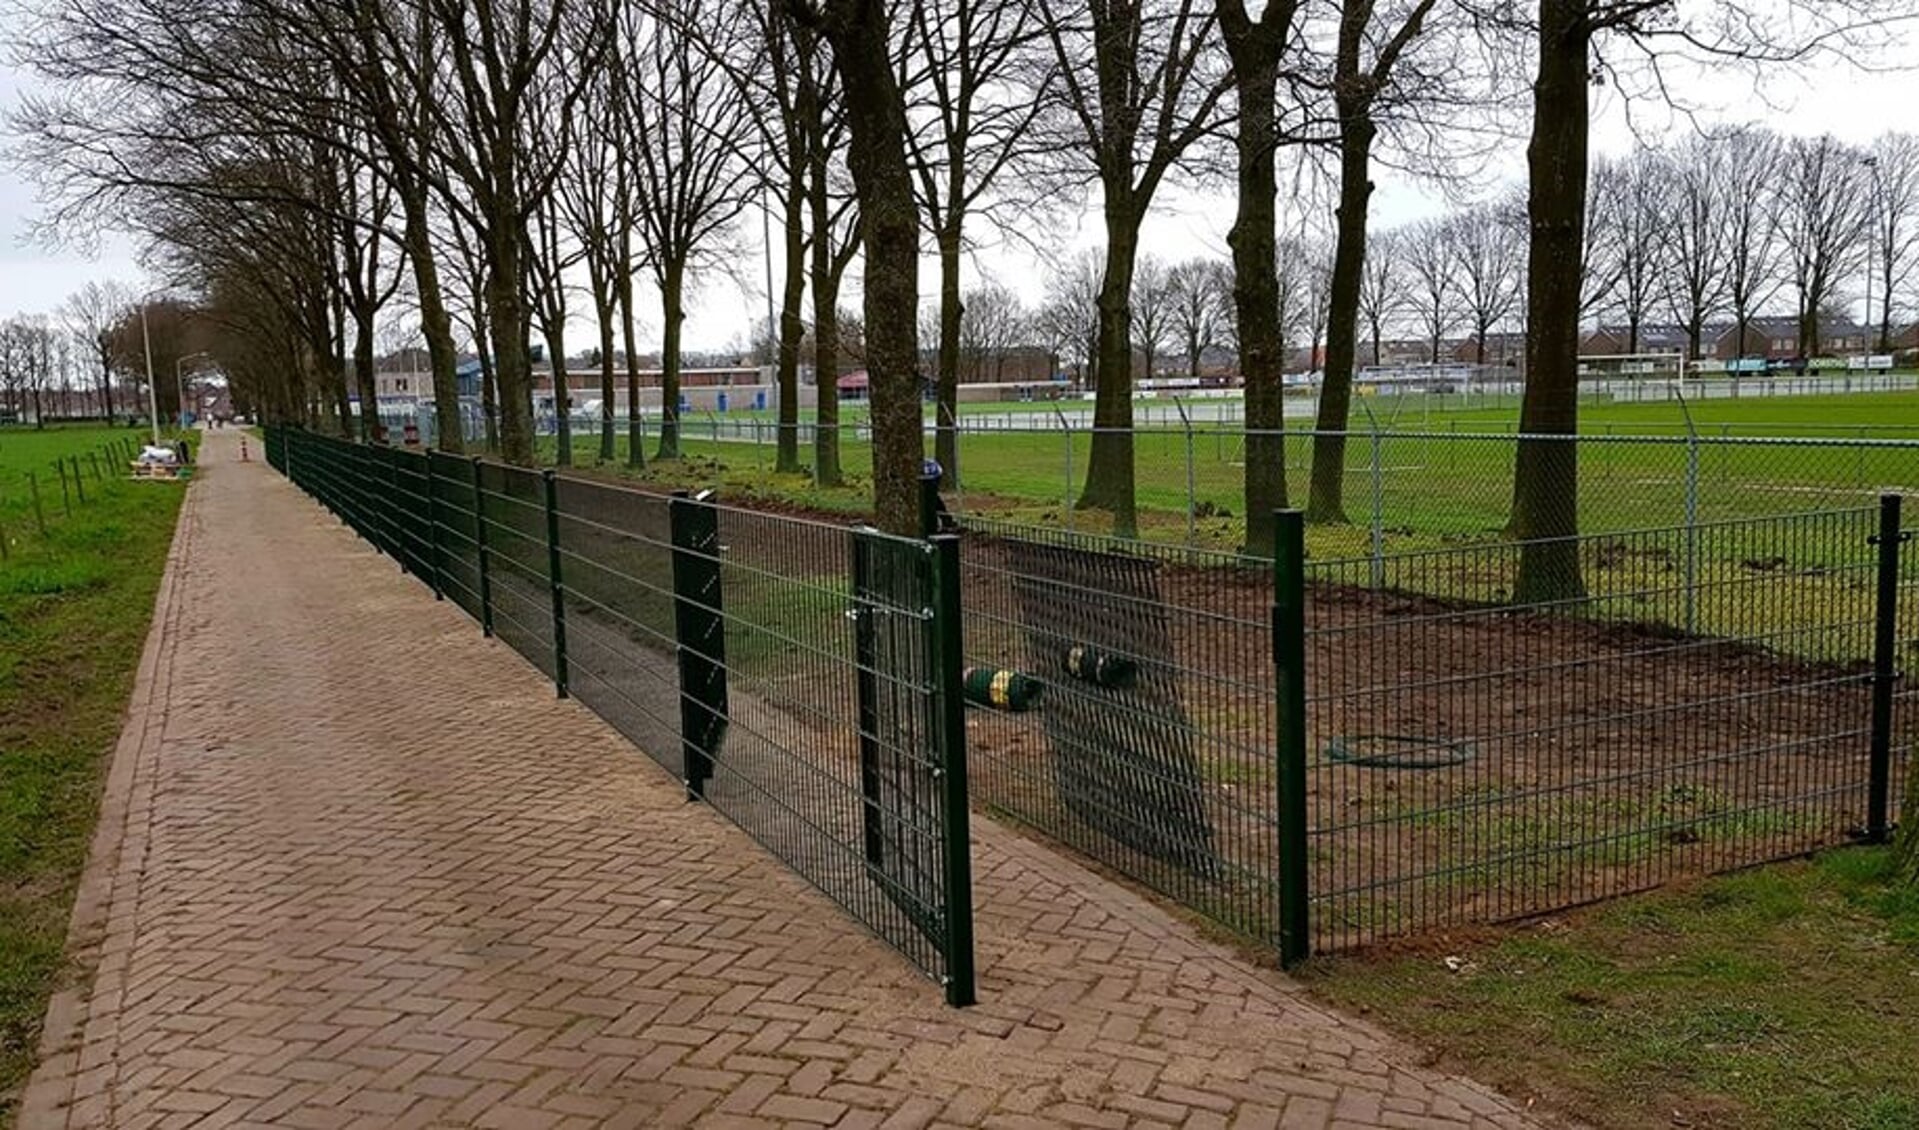 Landelijk mechanisme Doe mee Deel van hekwerk rond nieuwe hondenuitlaatplaats in Hoeven verdwenen - Als  het nieuws uit Halderberge